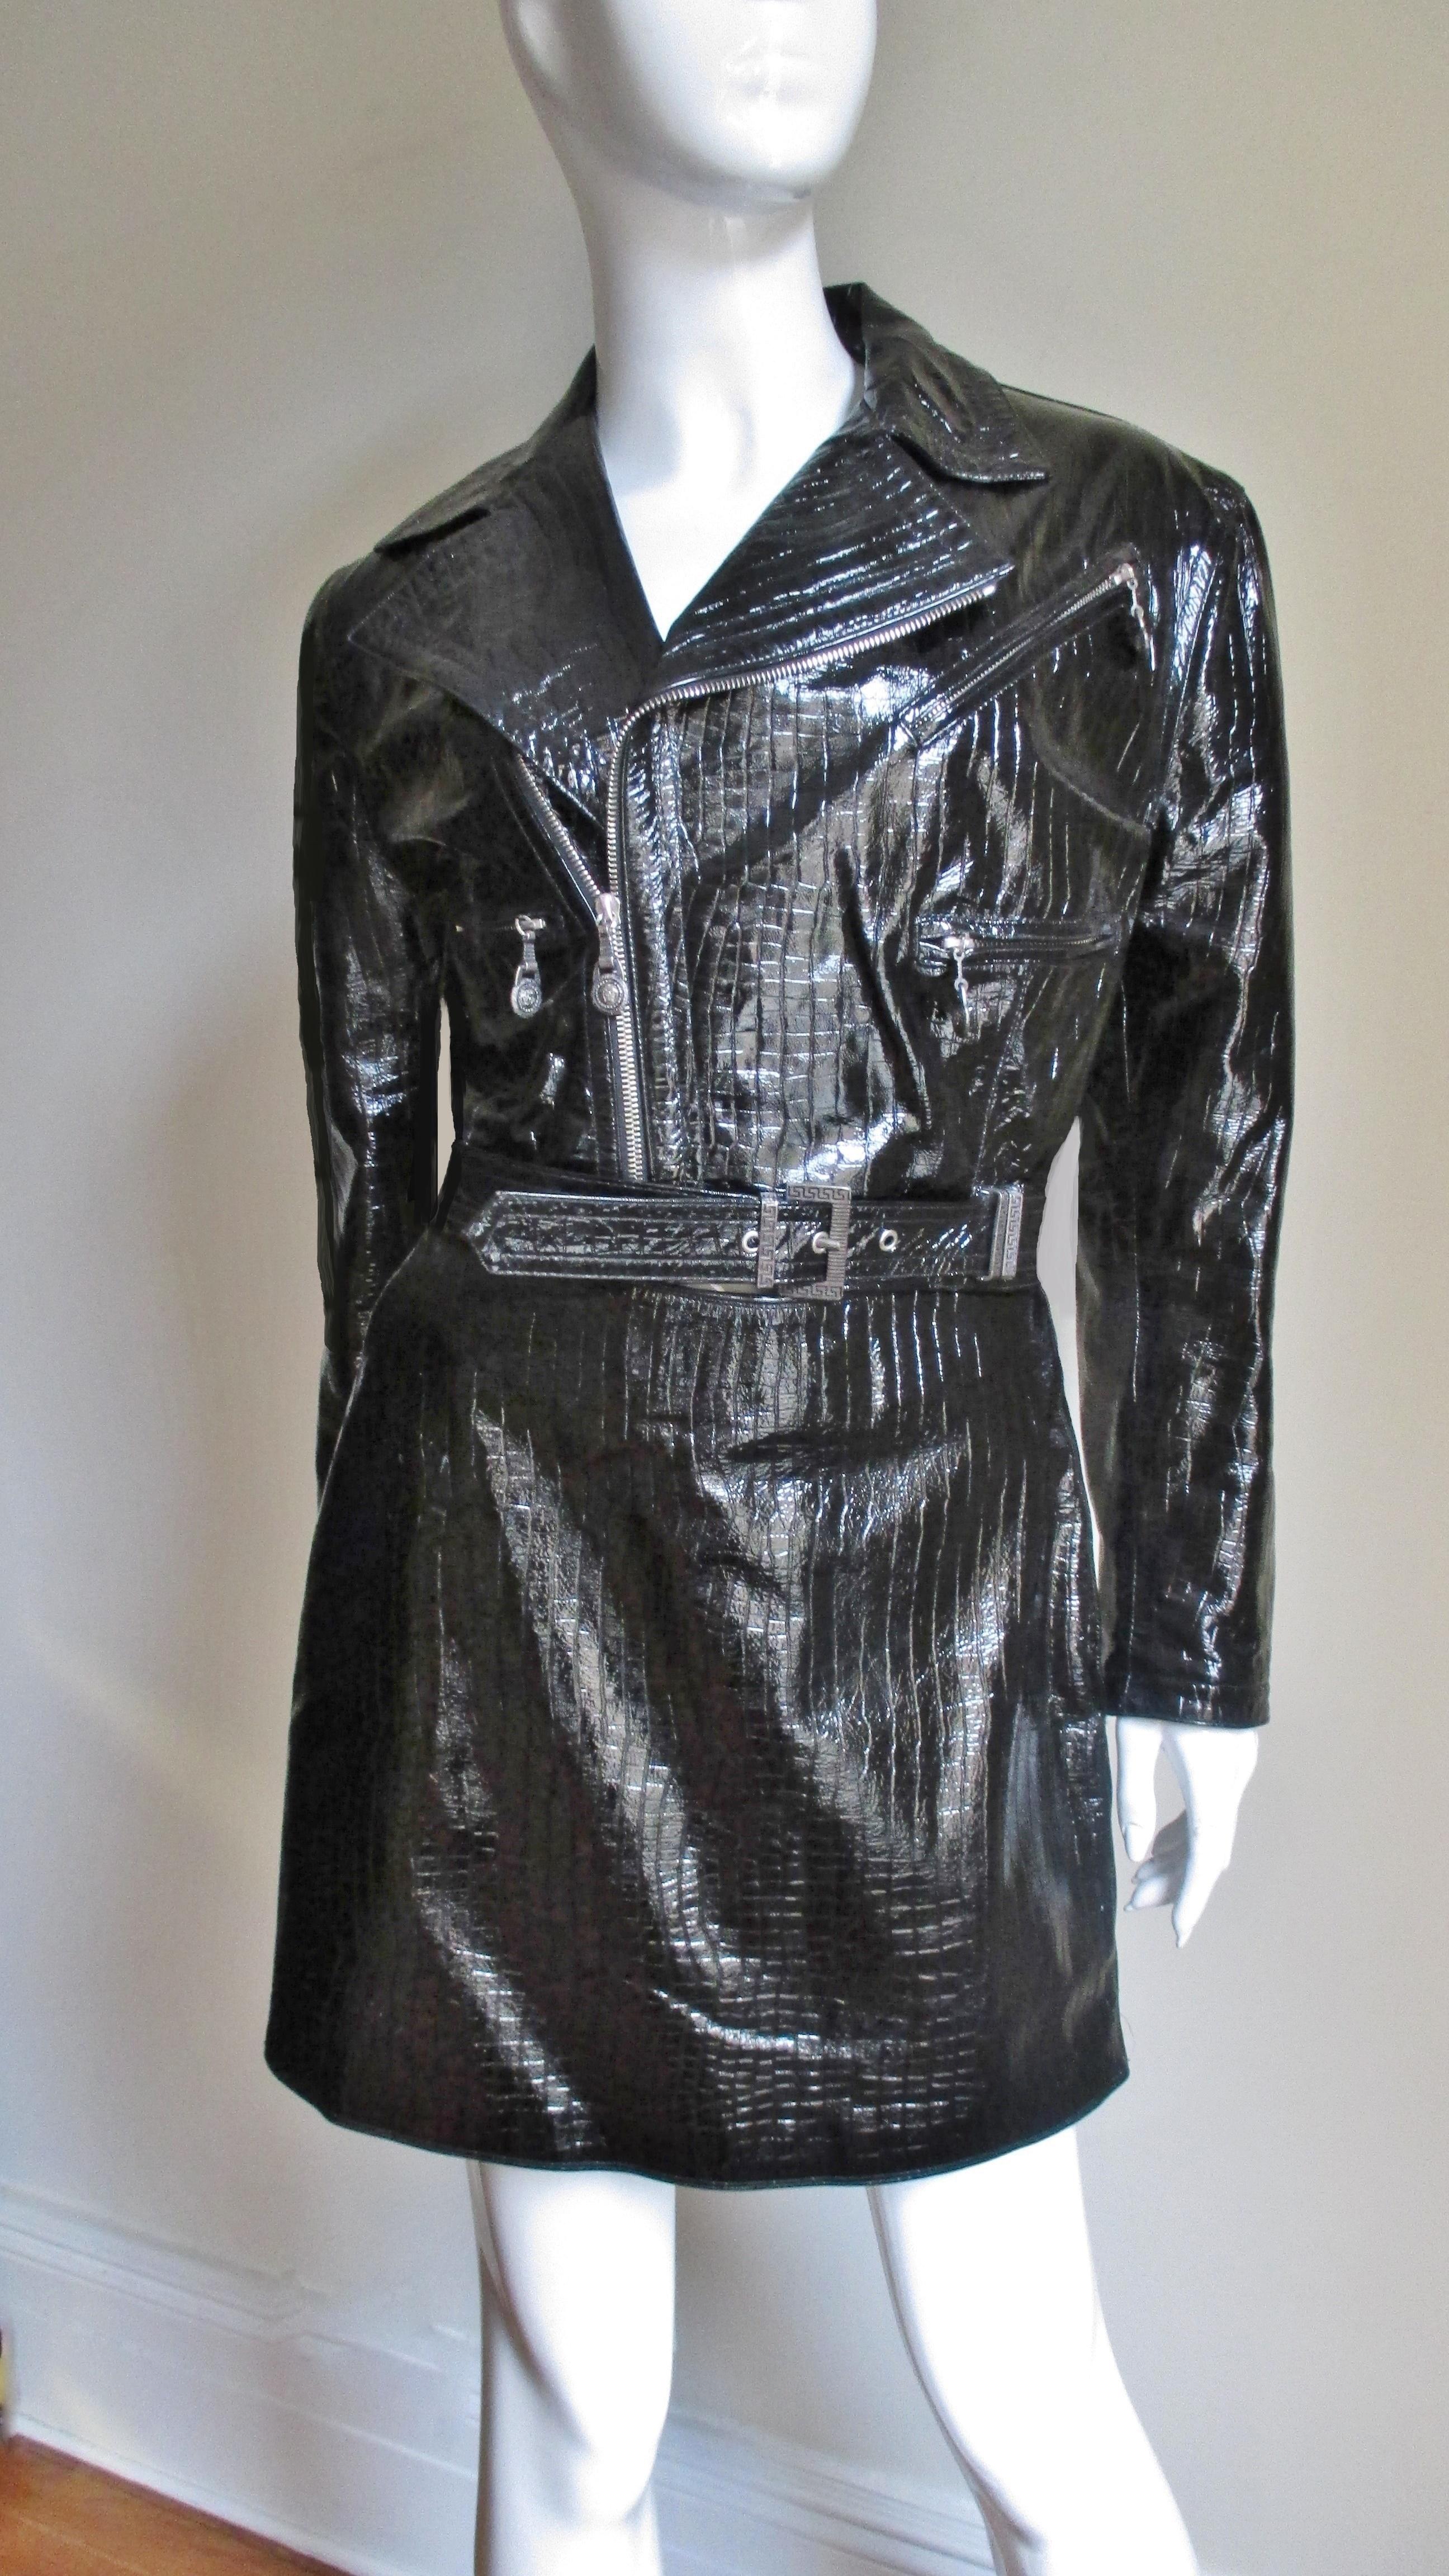 Eine fabelhafte 2 Stück schwarzem Leder Motorradjacke mit passenden  Rockset aus der Kollektion FW 1994 von Gianni Versace, die immer seltener werden. Die Jacke enthält alle von Versace's tadellosen Liebe zum Detail einschließlich Medusa Kopf zieht